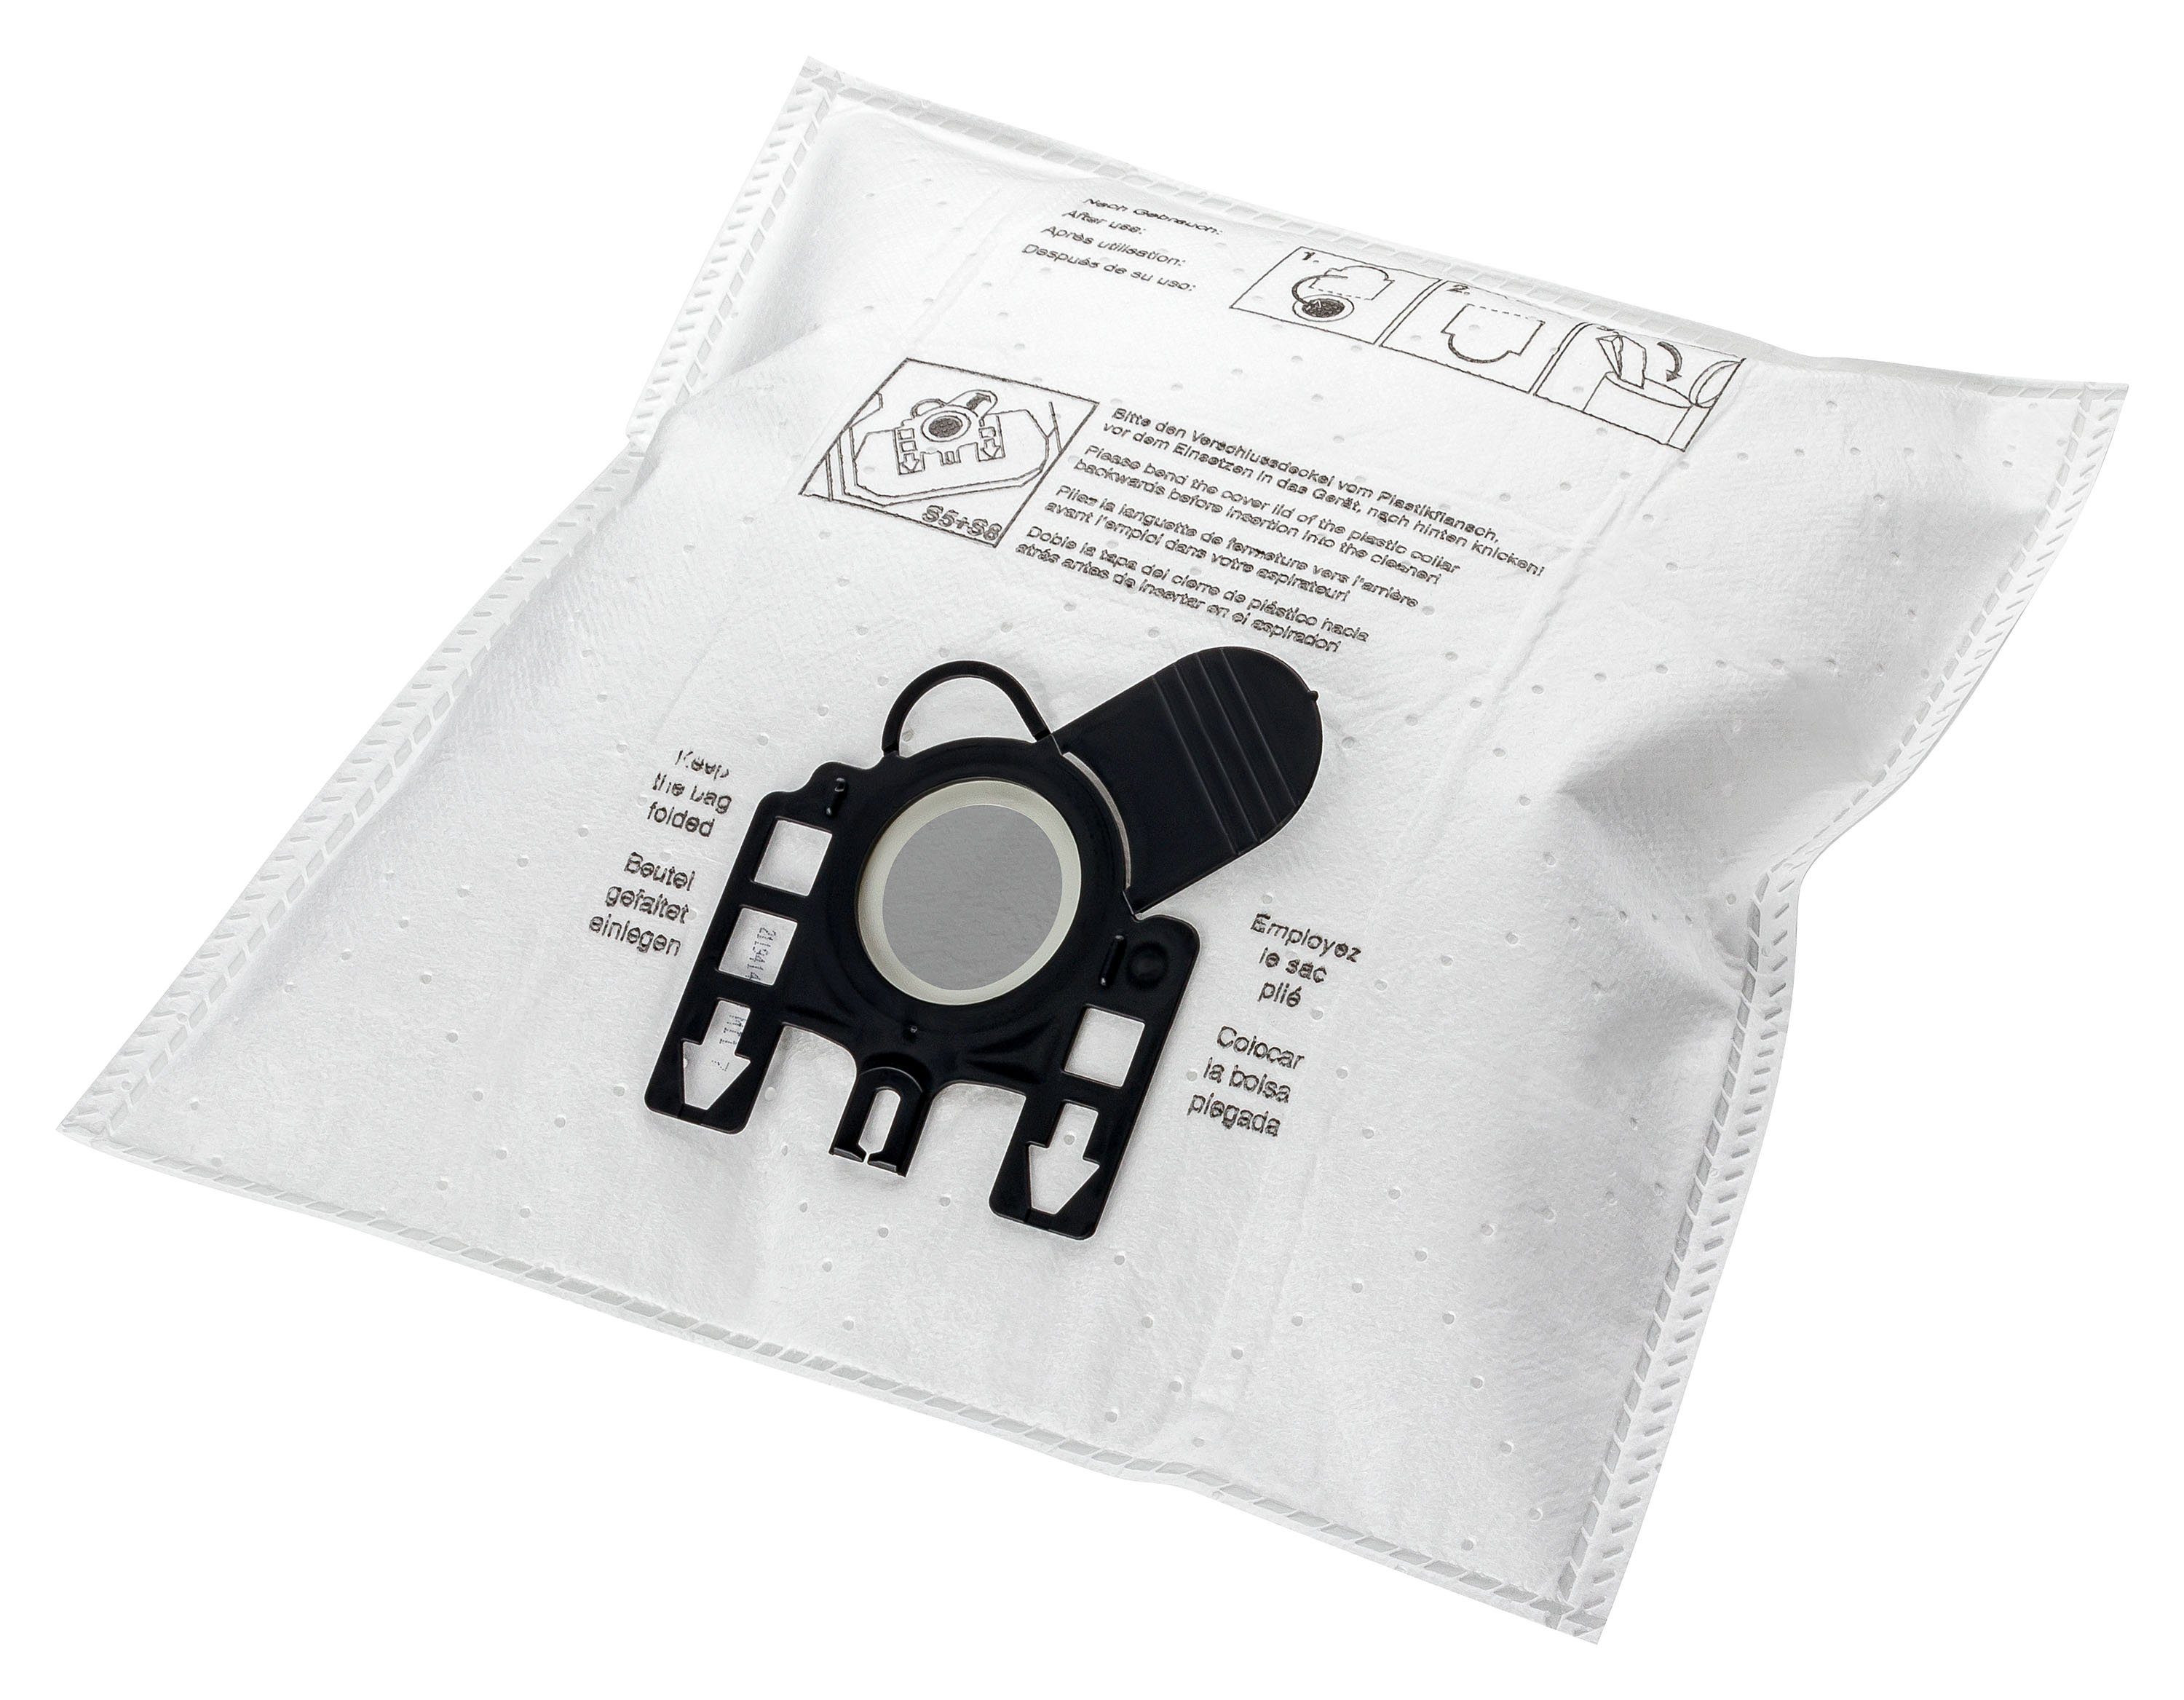 Hoover Sensory, Tc5216, Hoover passend Etana Staubsaugerbeutel Sensory, für mit Hygiene-Klapp-Verschluss Tc Tc 5216 5216 Tc5216,